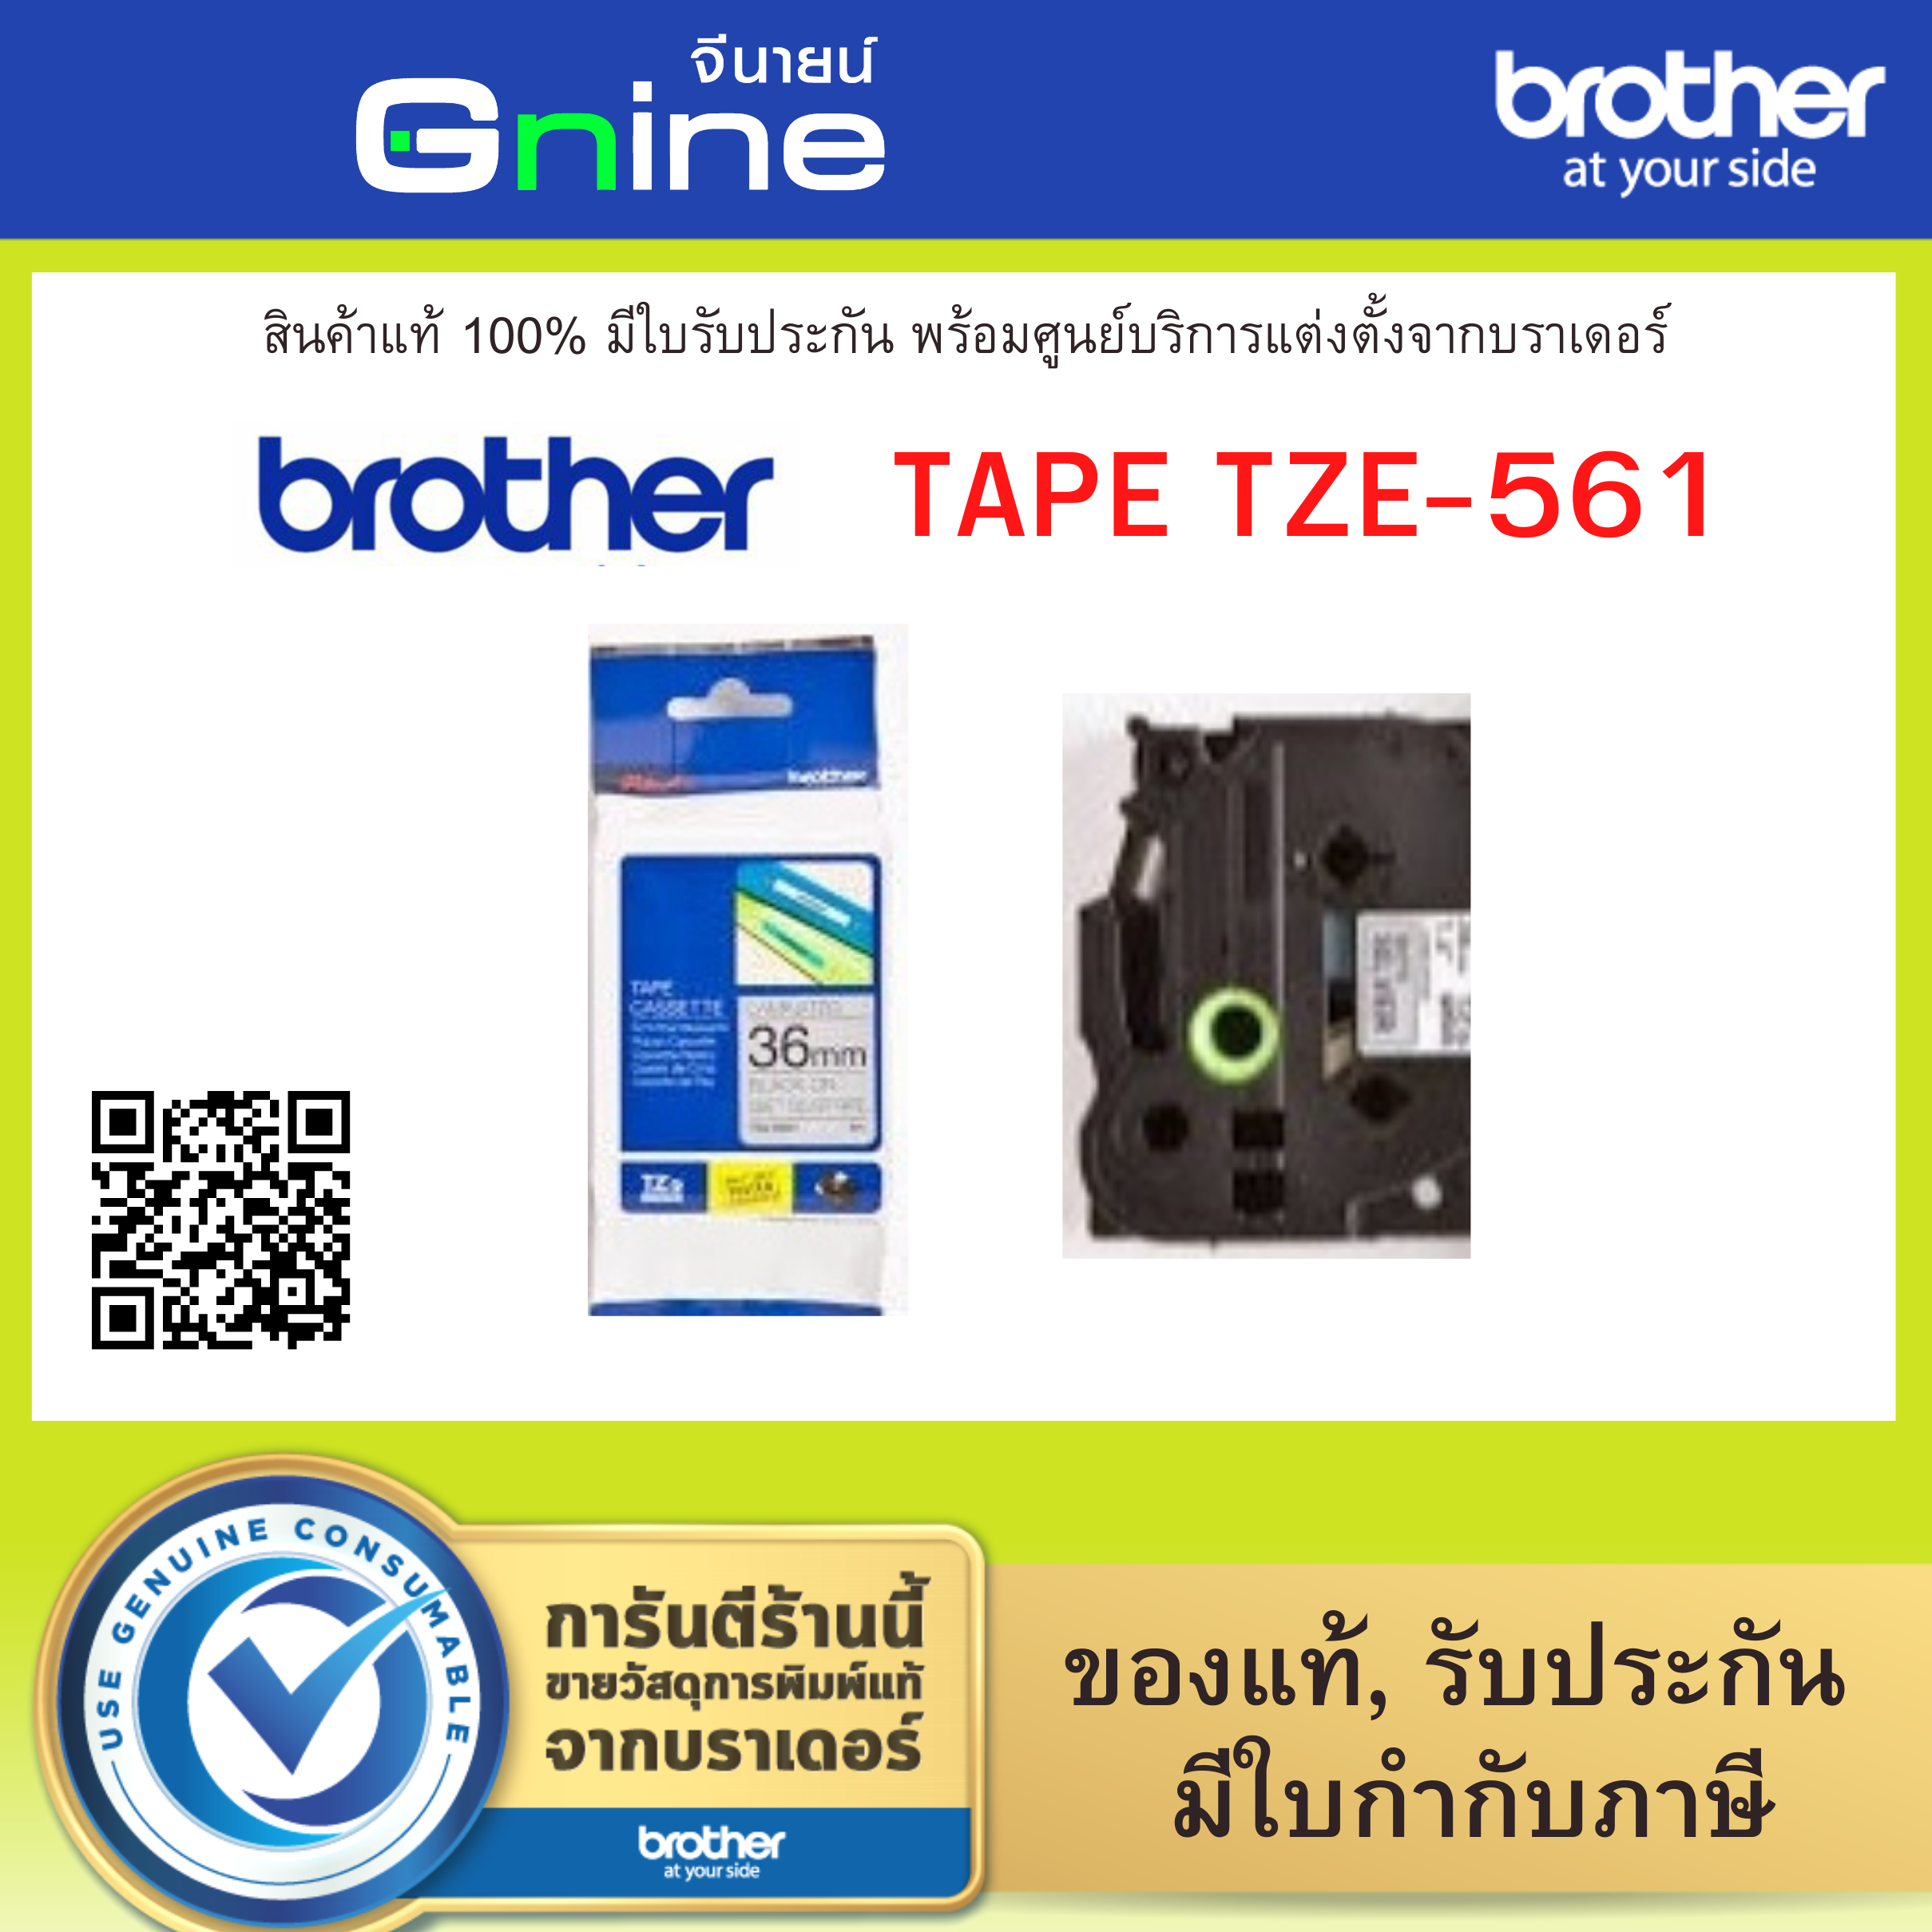 Brother Tape TZE-561 (เทปพิมพ์อักษรบราเดอร์ขนาด 36มม.)